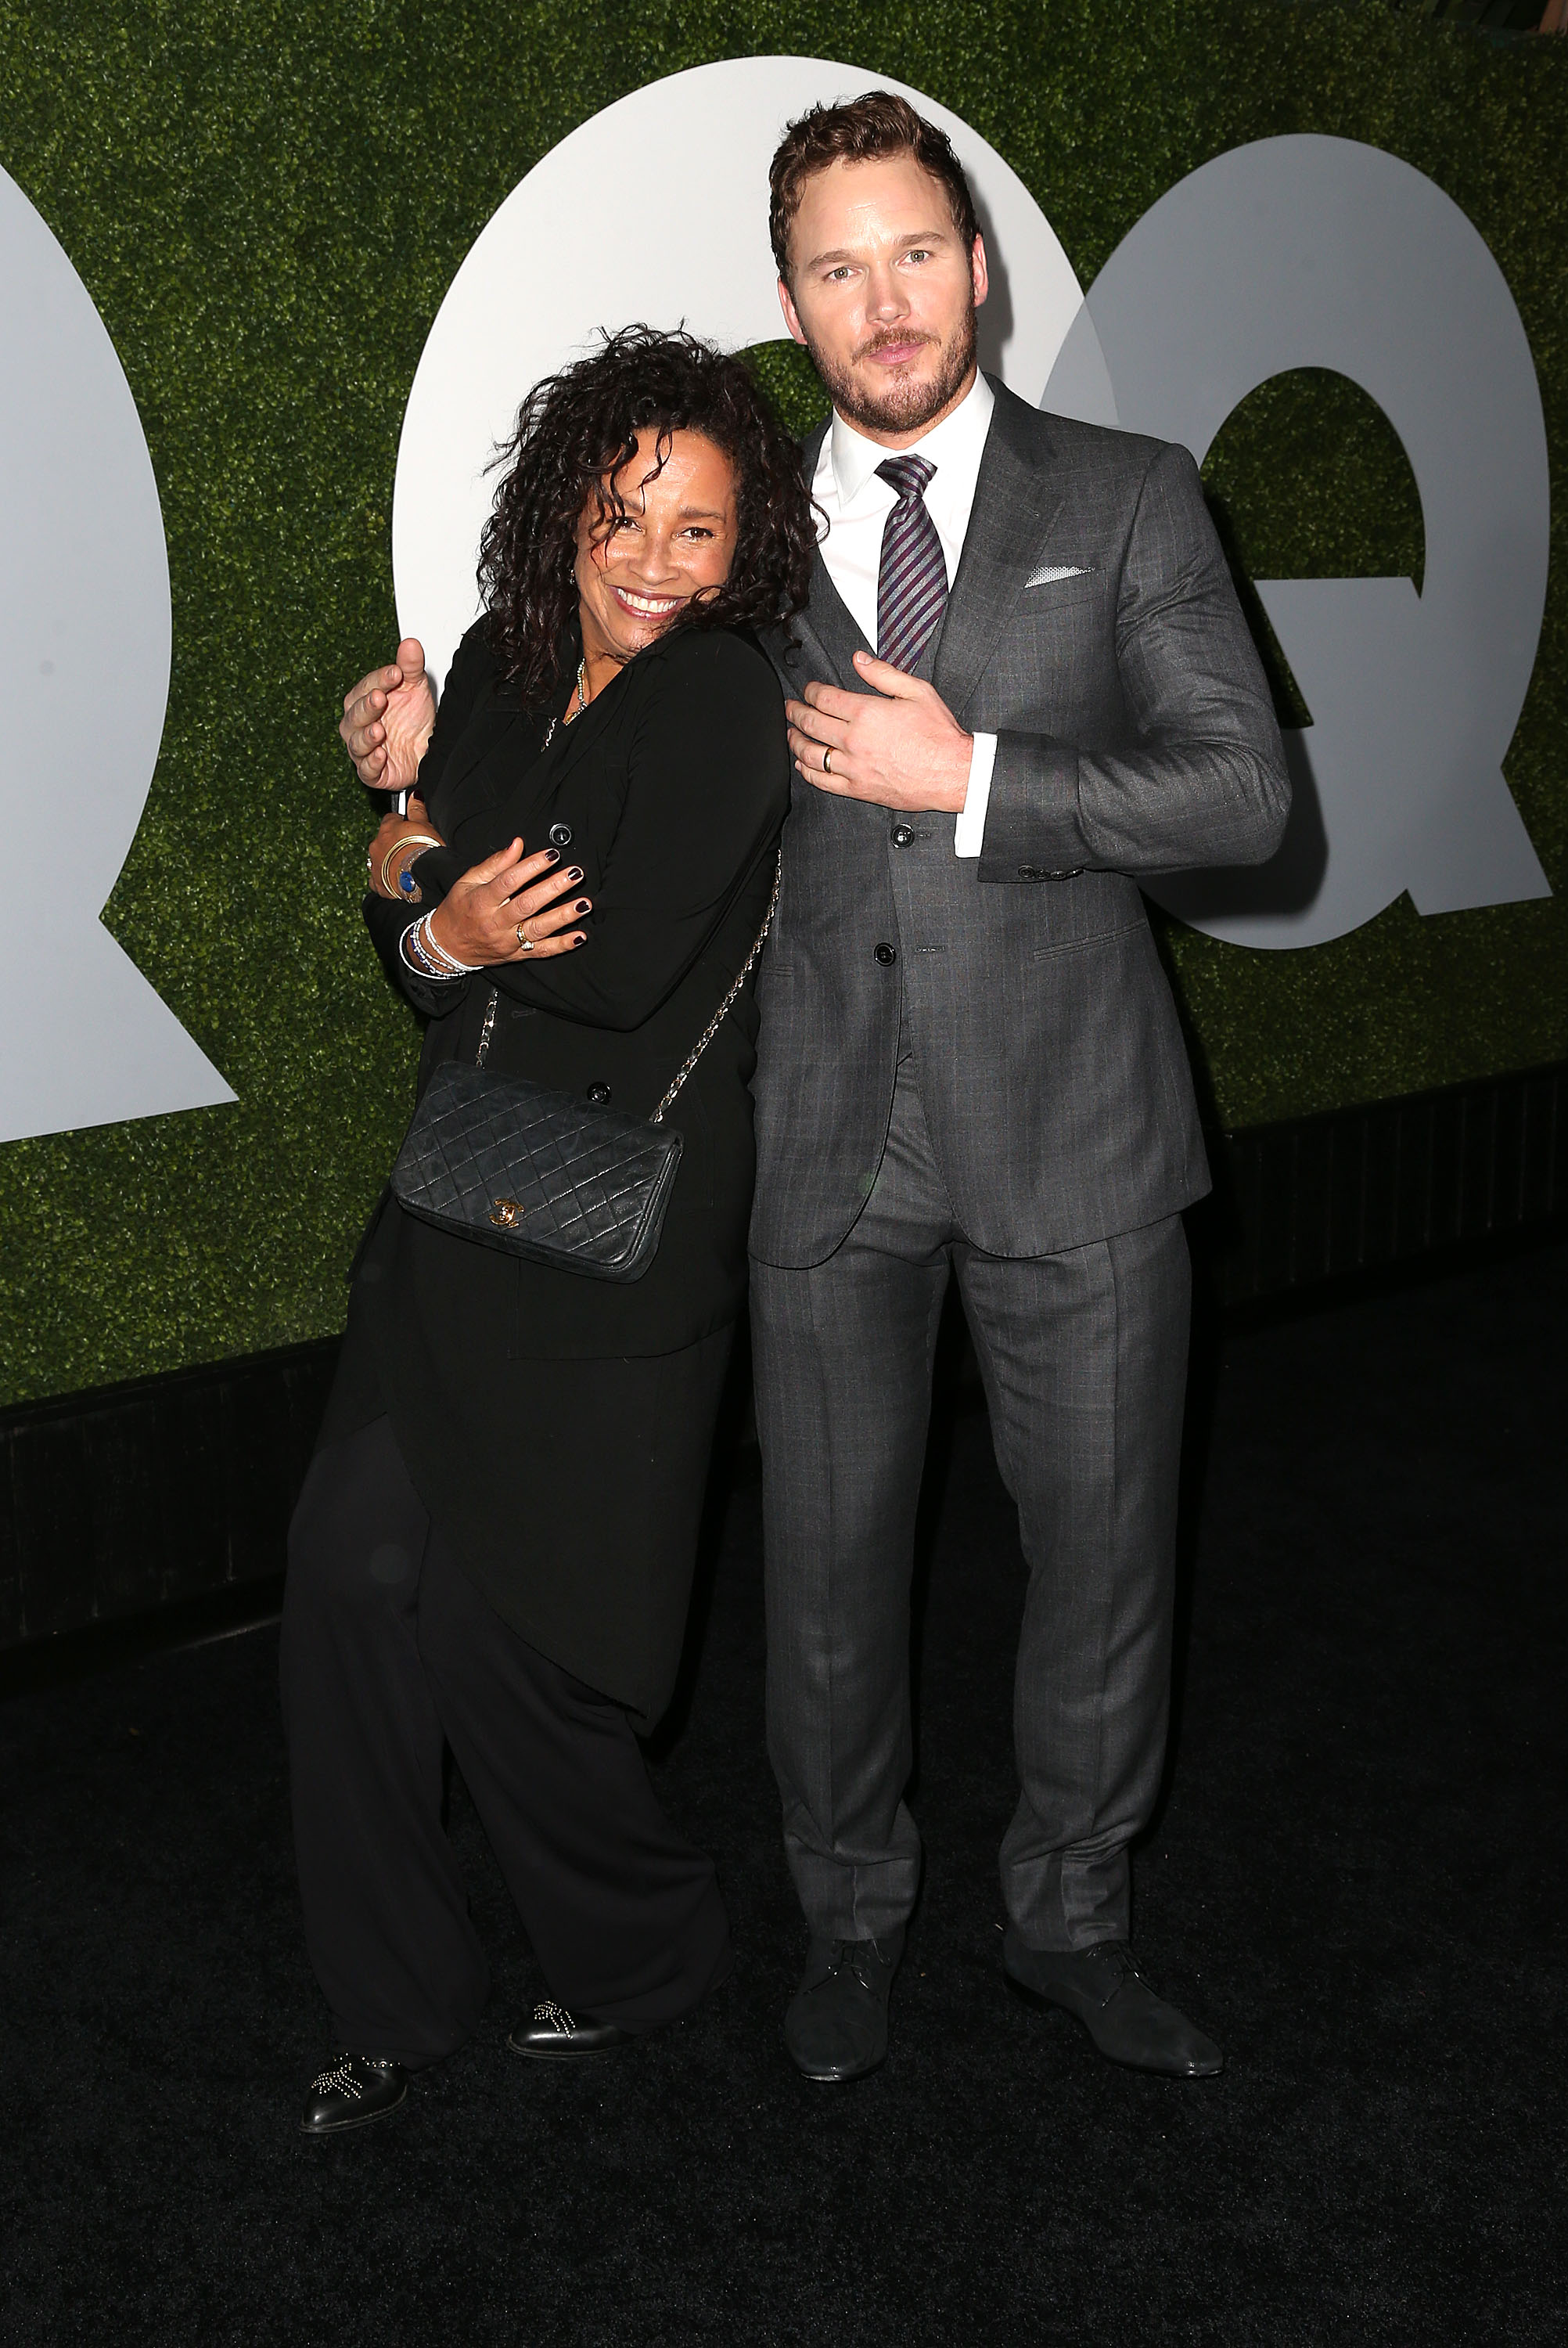 Rae Dawn Chong et Chris Pratt assistant à une soirée GQ le 4 décembre 2014 à Hollywood, Californie | Source : Getty Images